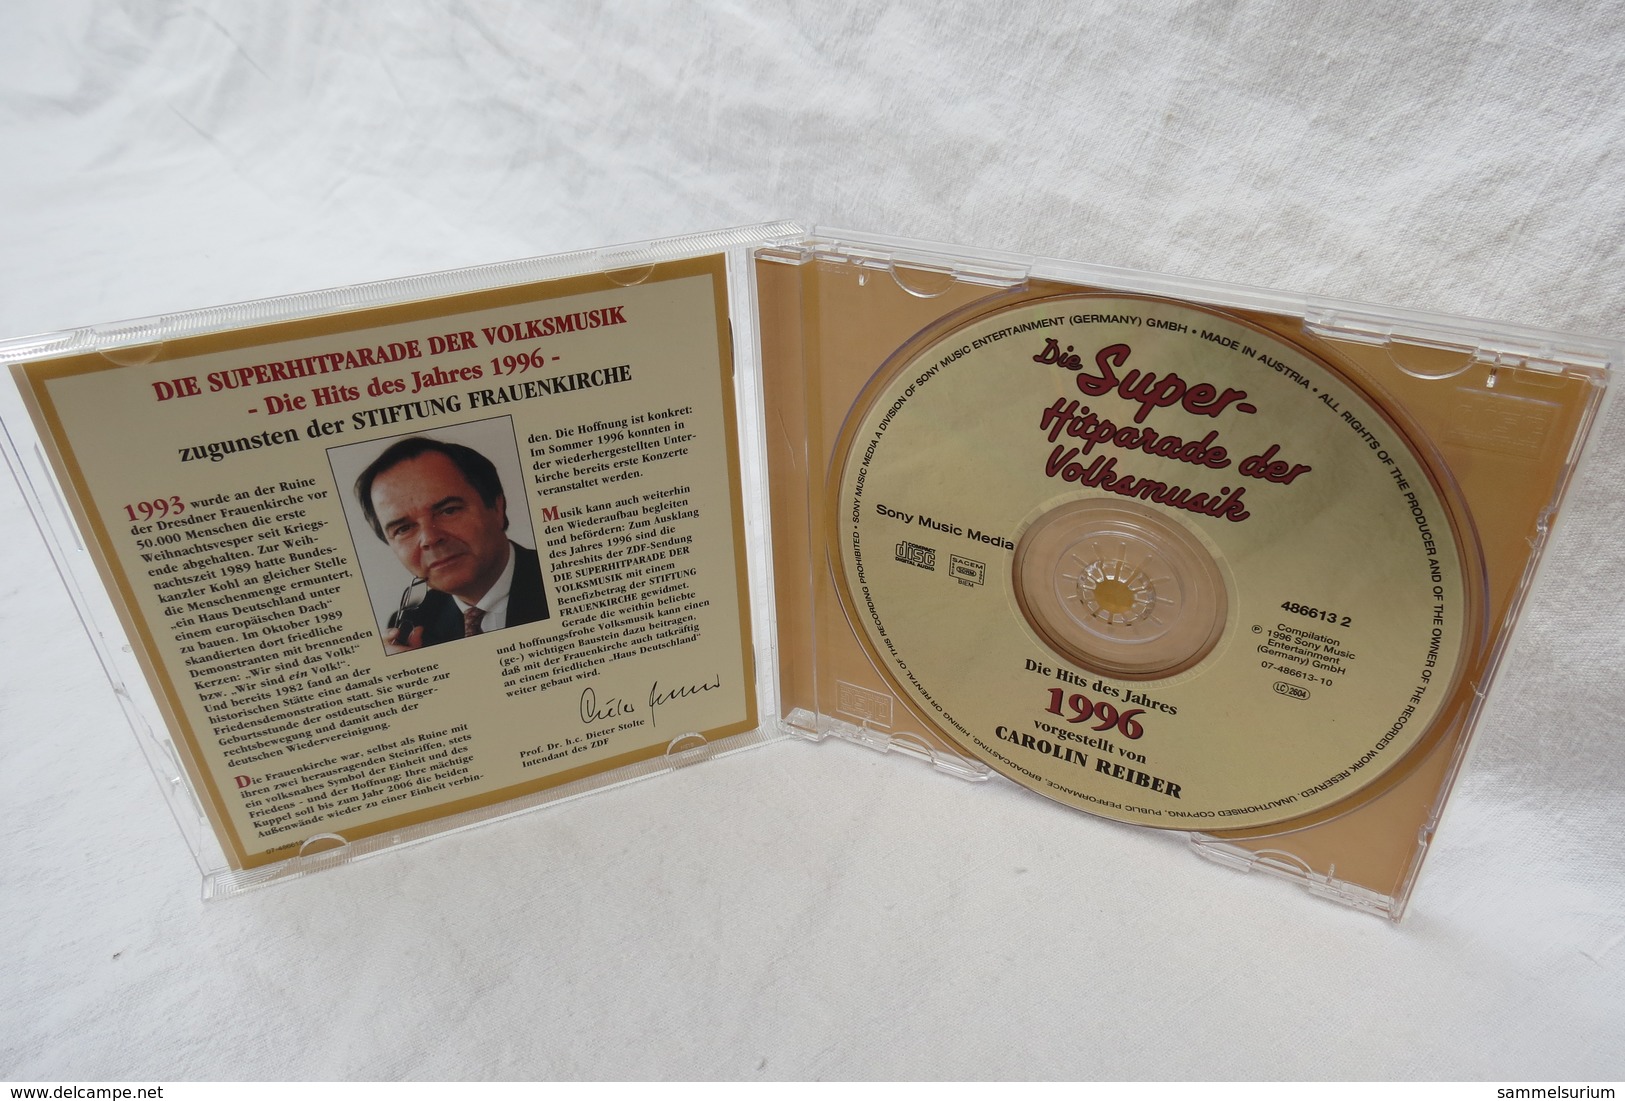 CD "Super-Hitparade Der Volksmusik" Hits Des Jahres 1996, Vorgestellt Von Carolin Reiber - Autres - Musique Allemande